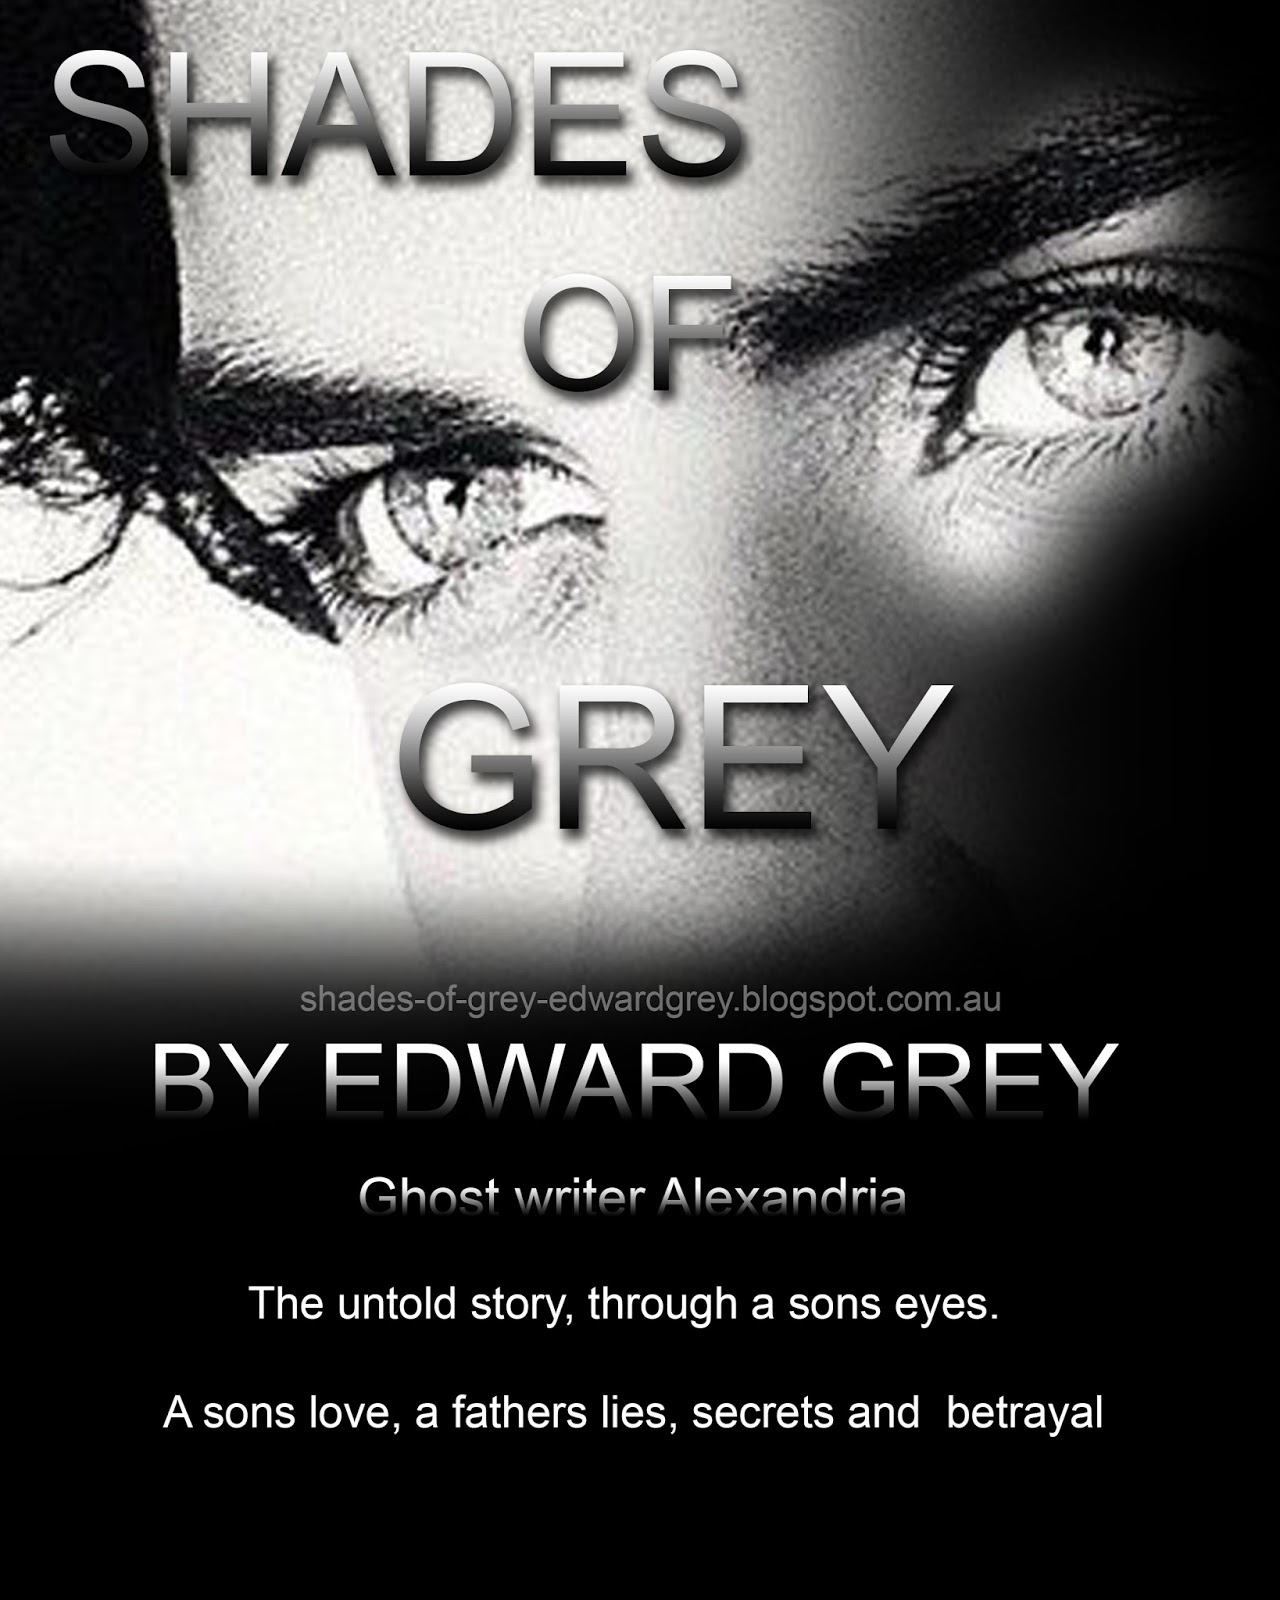 Grey-shades of grey by edward grey